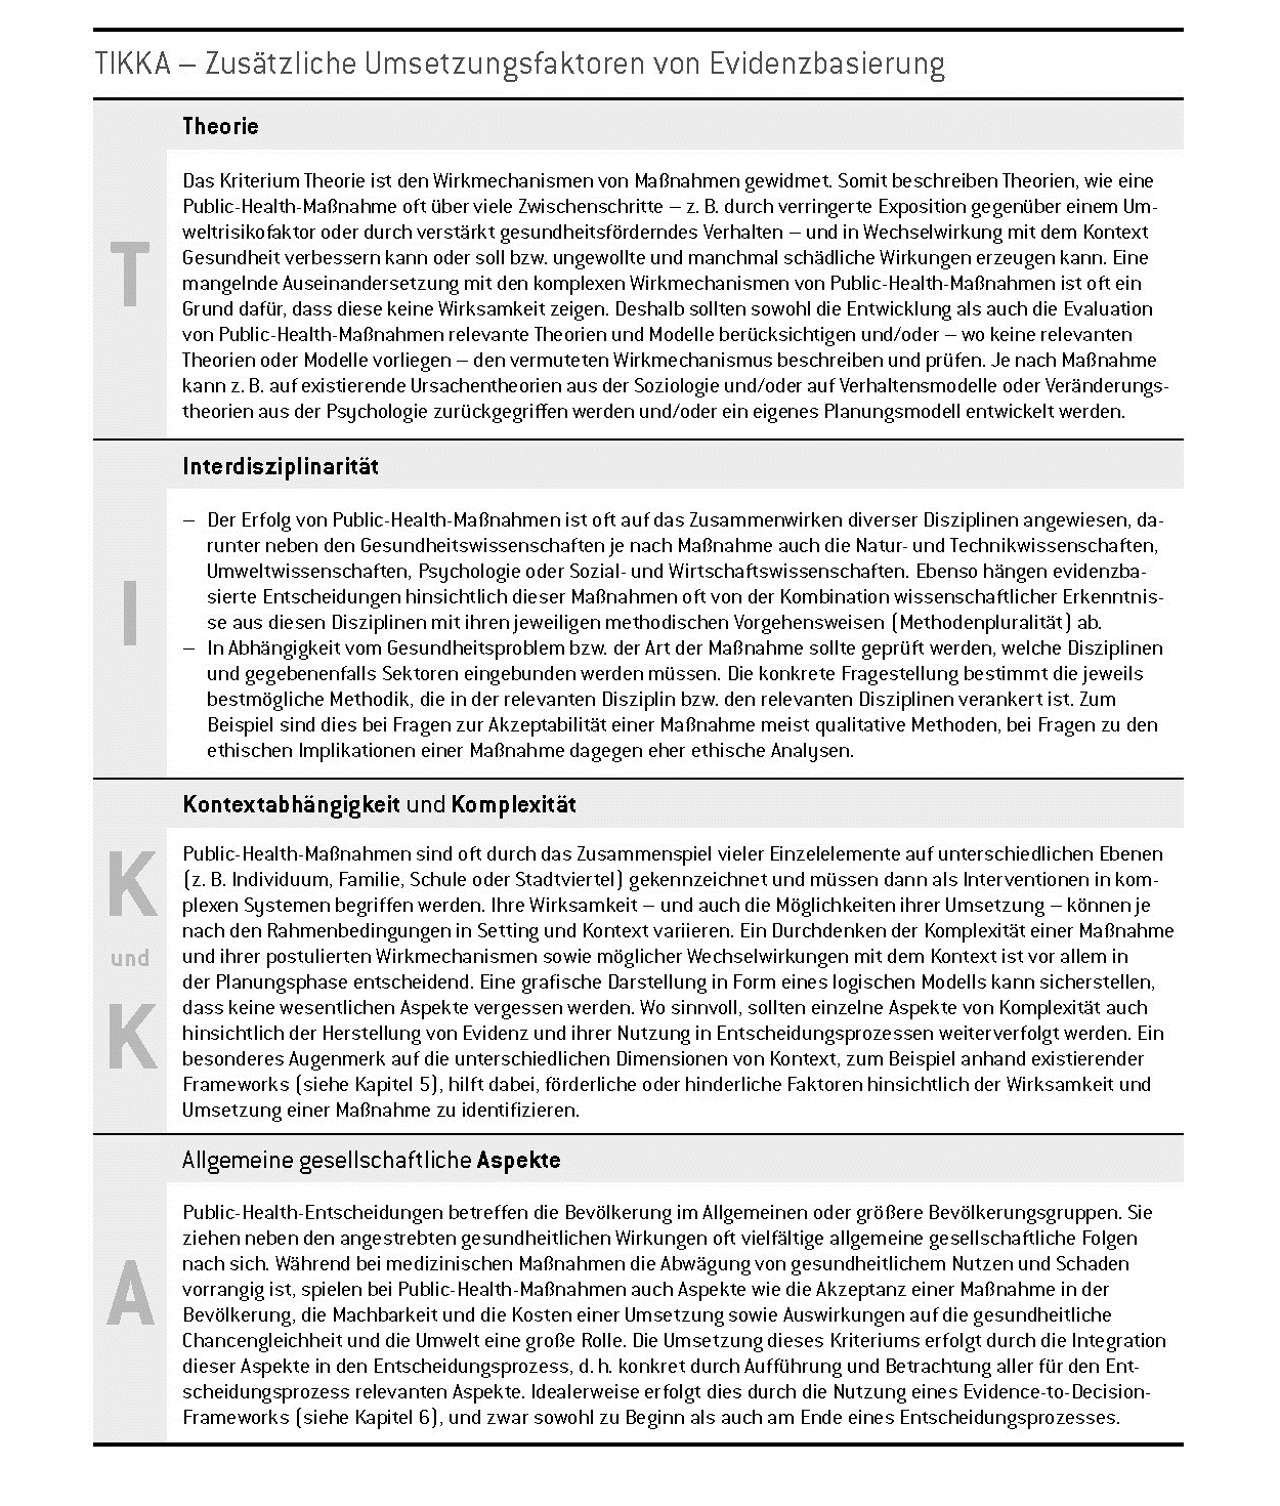 Tab. 3: TIKKA − Zusätzliche Umsetzungsfaktoren von Evidenzbasierung im Bereich Public Health, eigene Darstellung